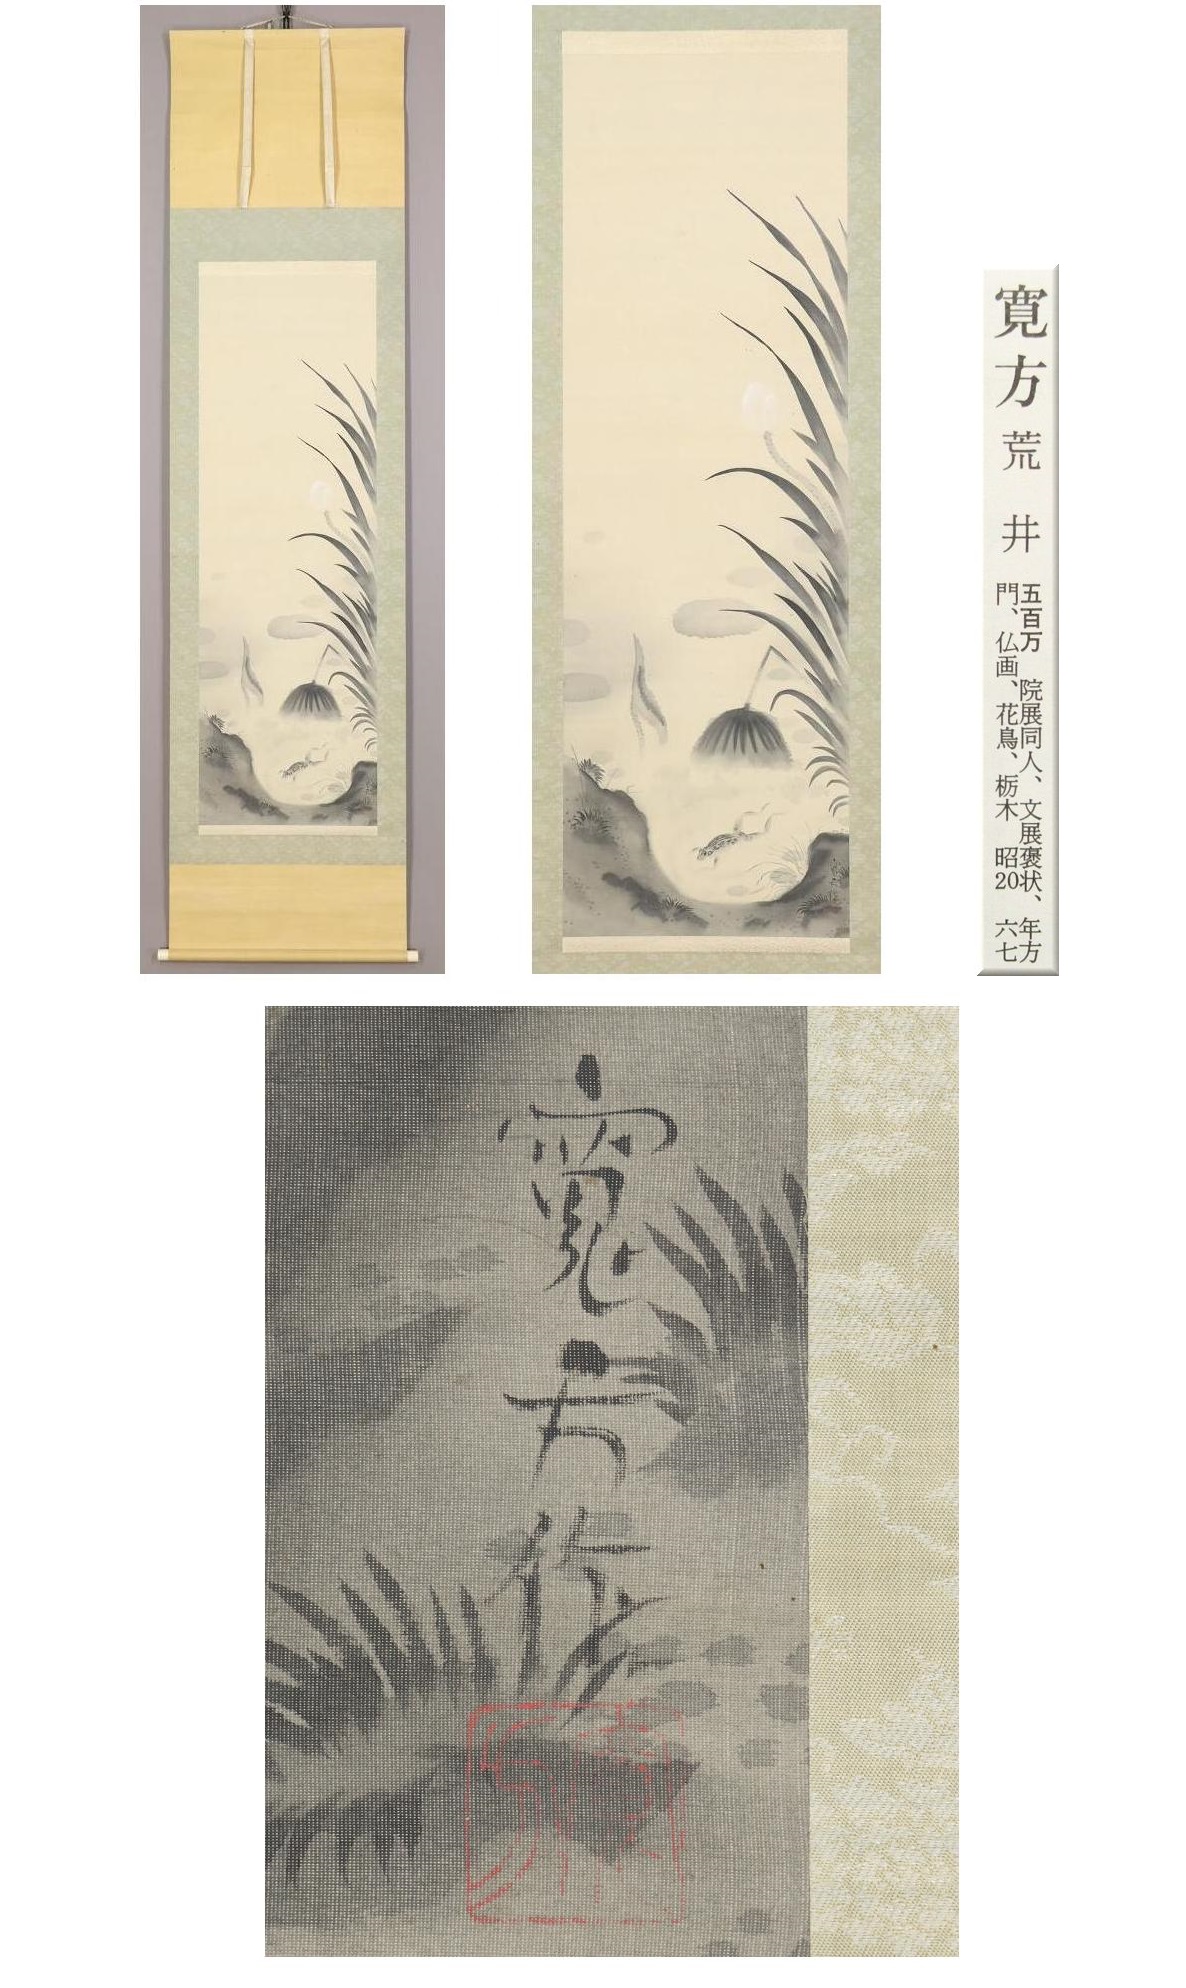 驚きの安さ◆荒井寛方◆蓮池蛙◆日本画◆浮世絵師◆栃木県◆肉筆◆絹本◆掛軸◆m704 花鳥、鳥獣